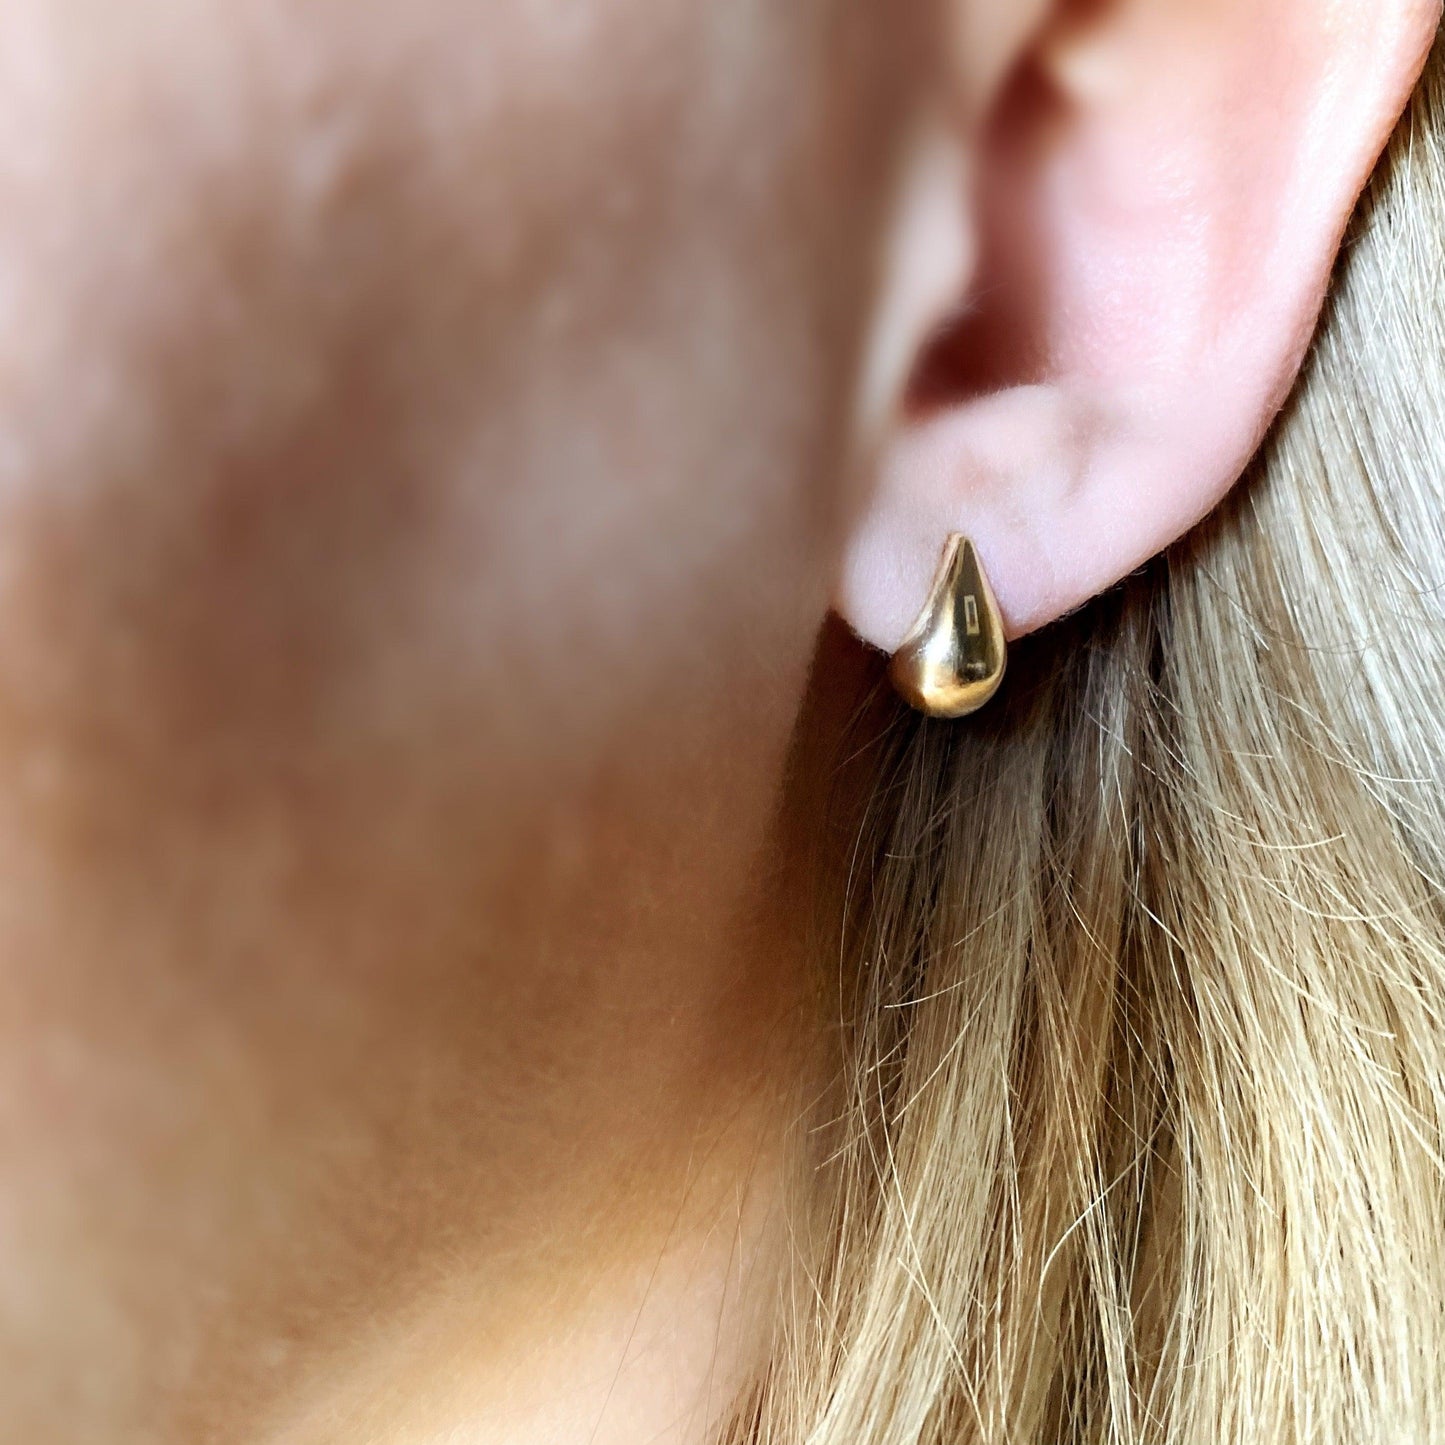 GoldFi 18k Gold Filled Teardrop Stud Earrings